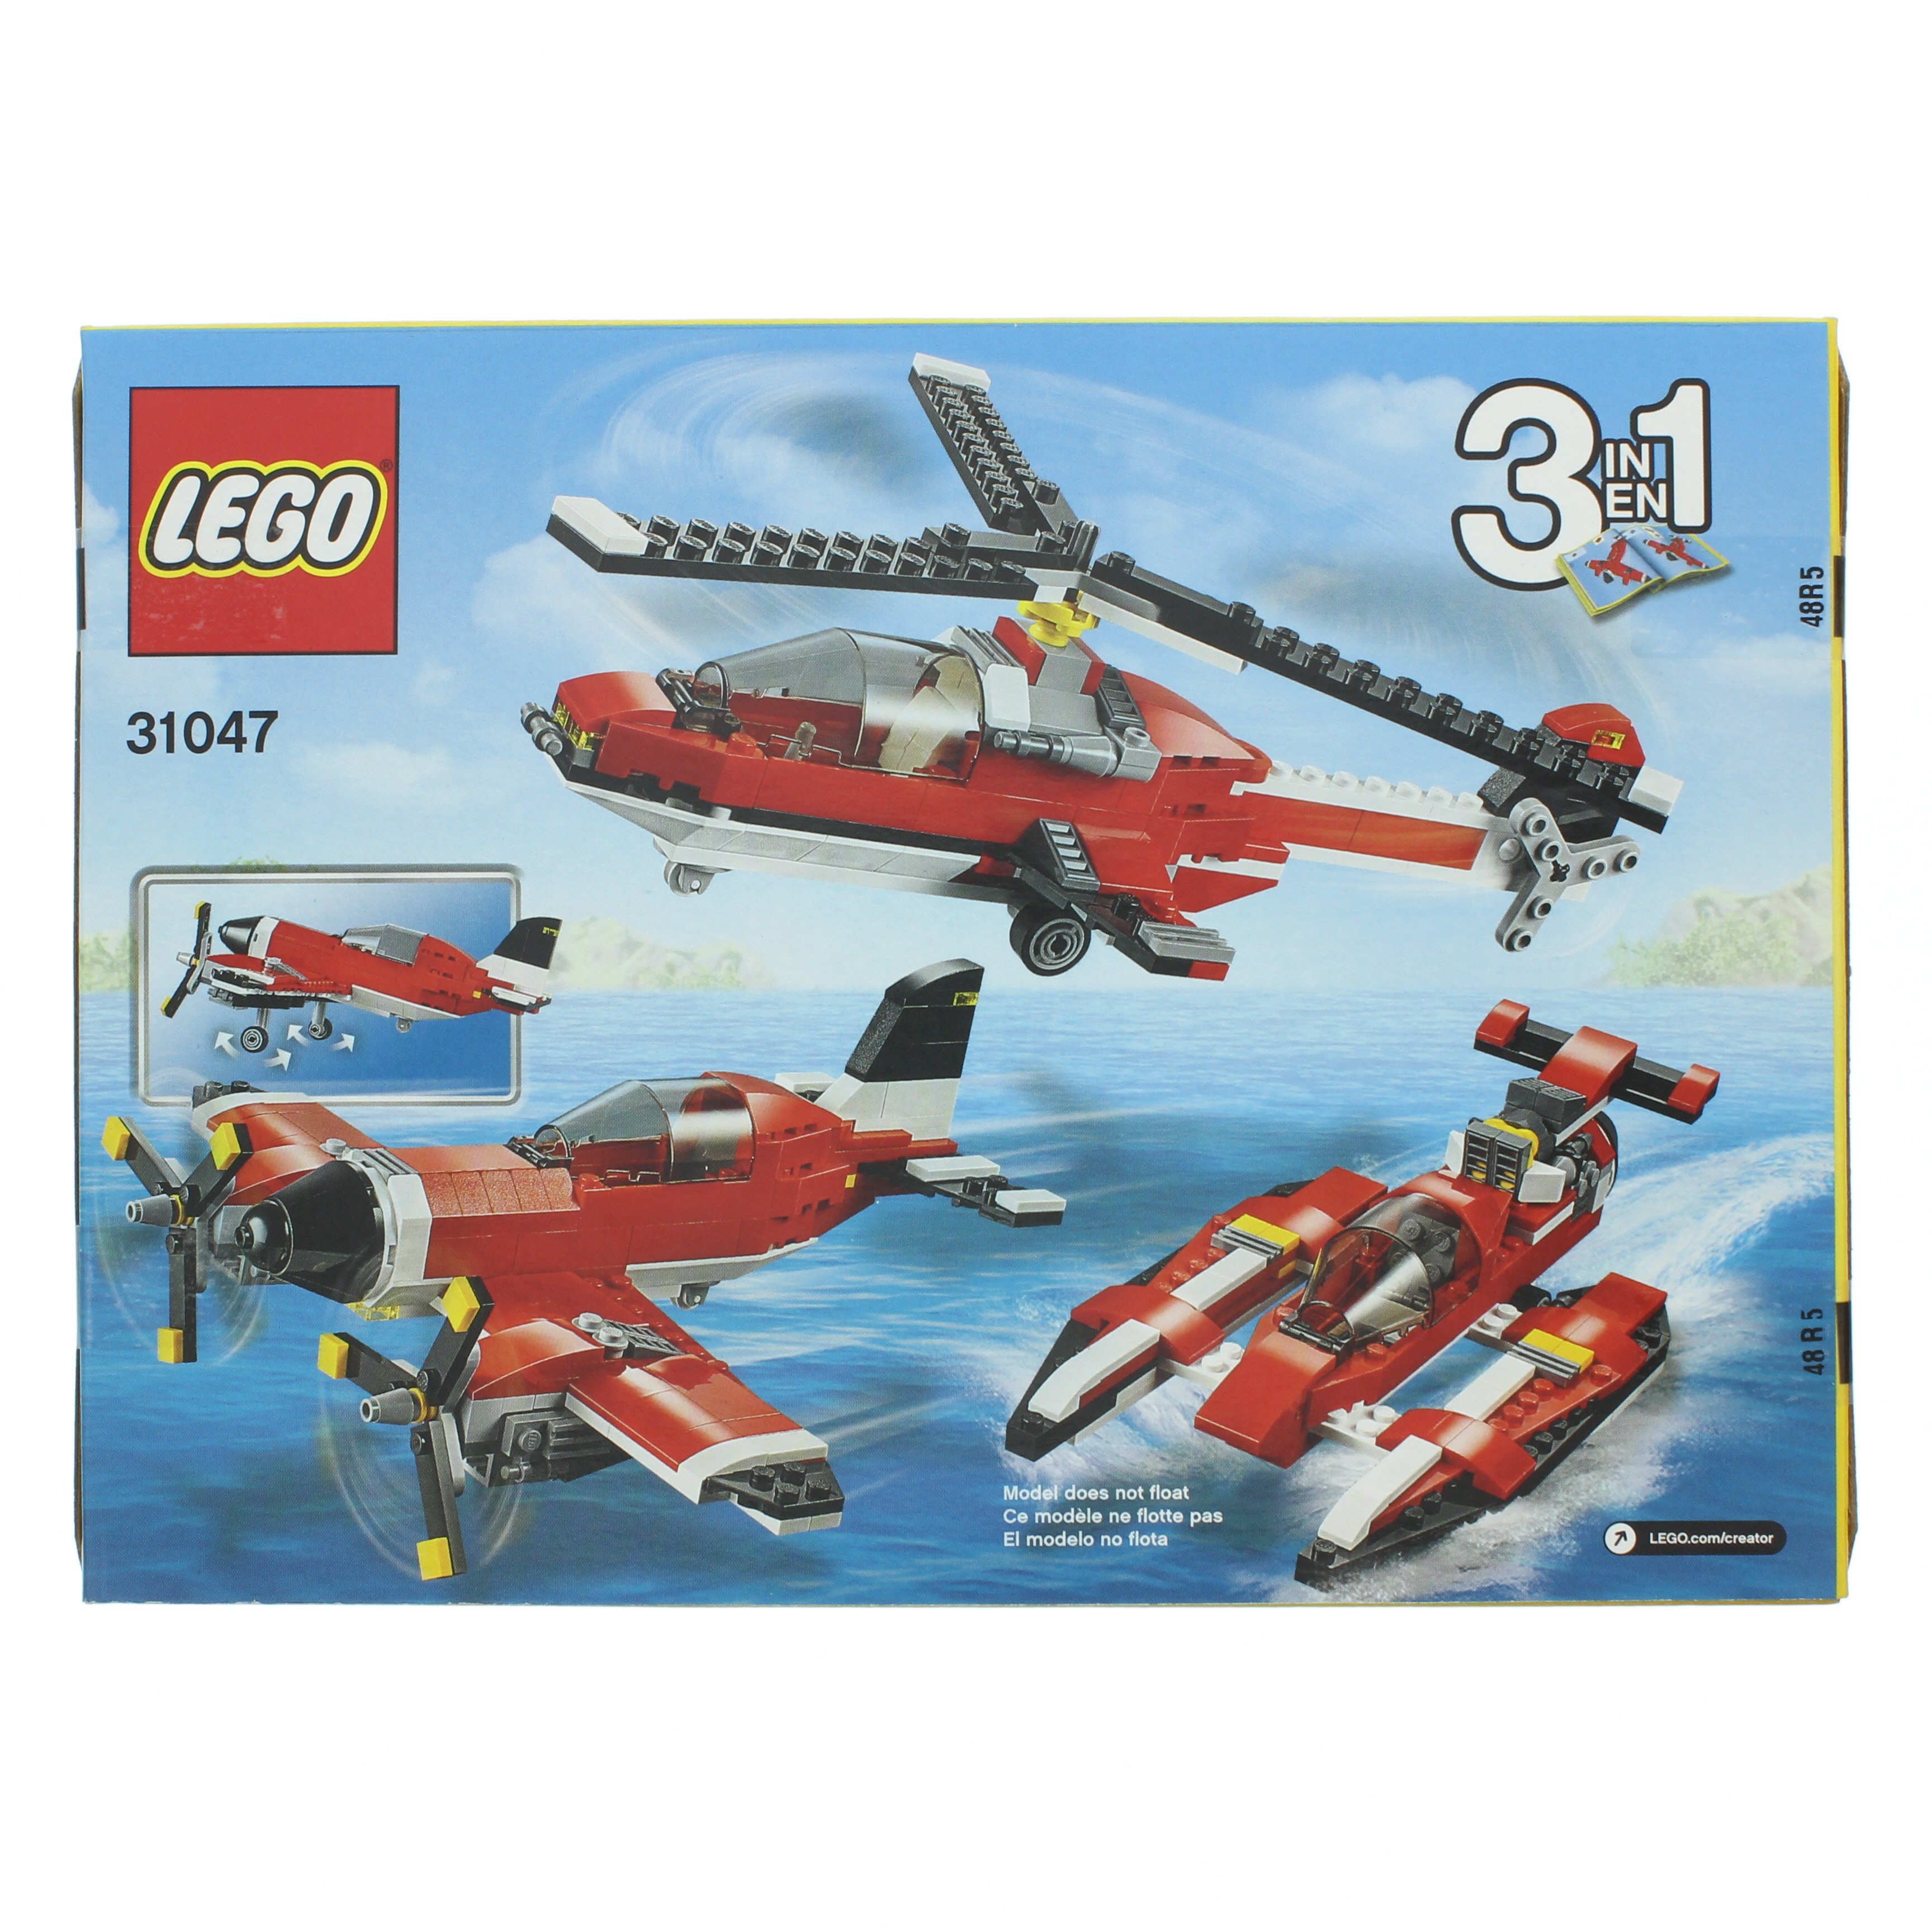 LEGO Creator Propeller Plane - at H-E-B